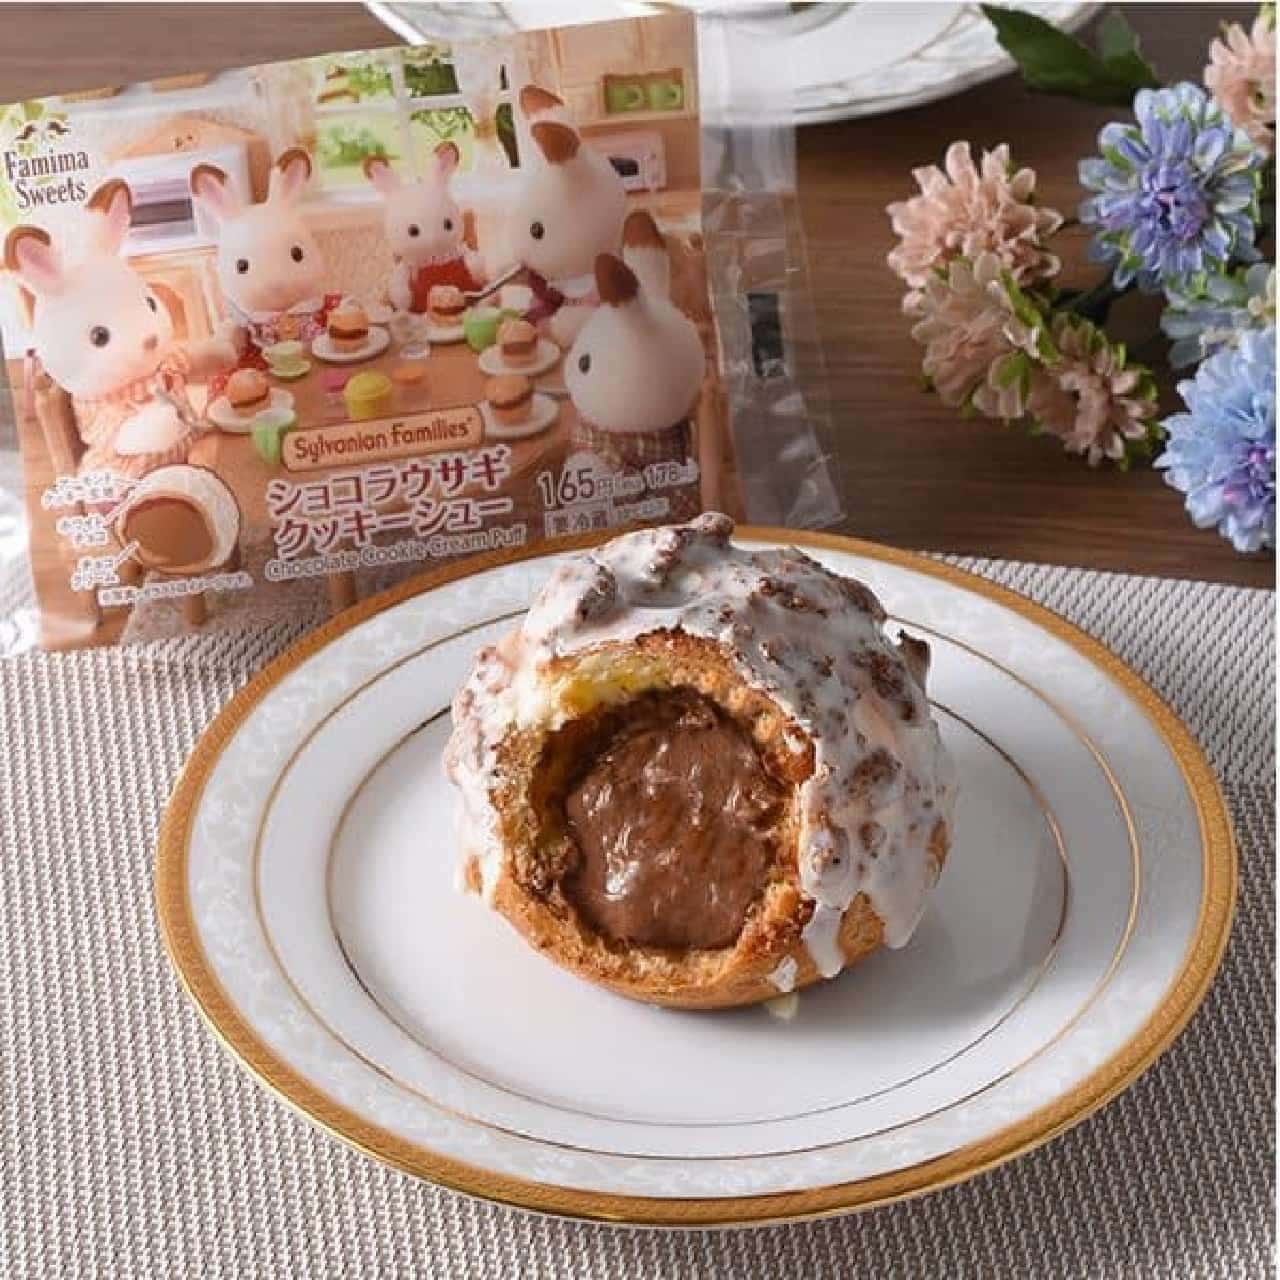 FamilyMart "Chocolat Rabbit Cookie Puffs